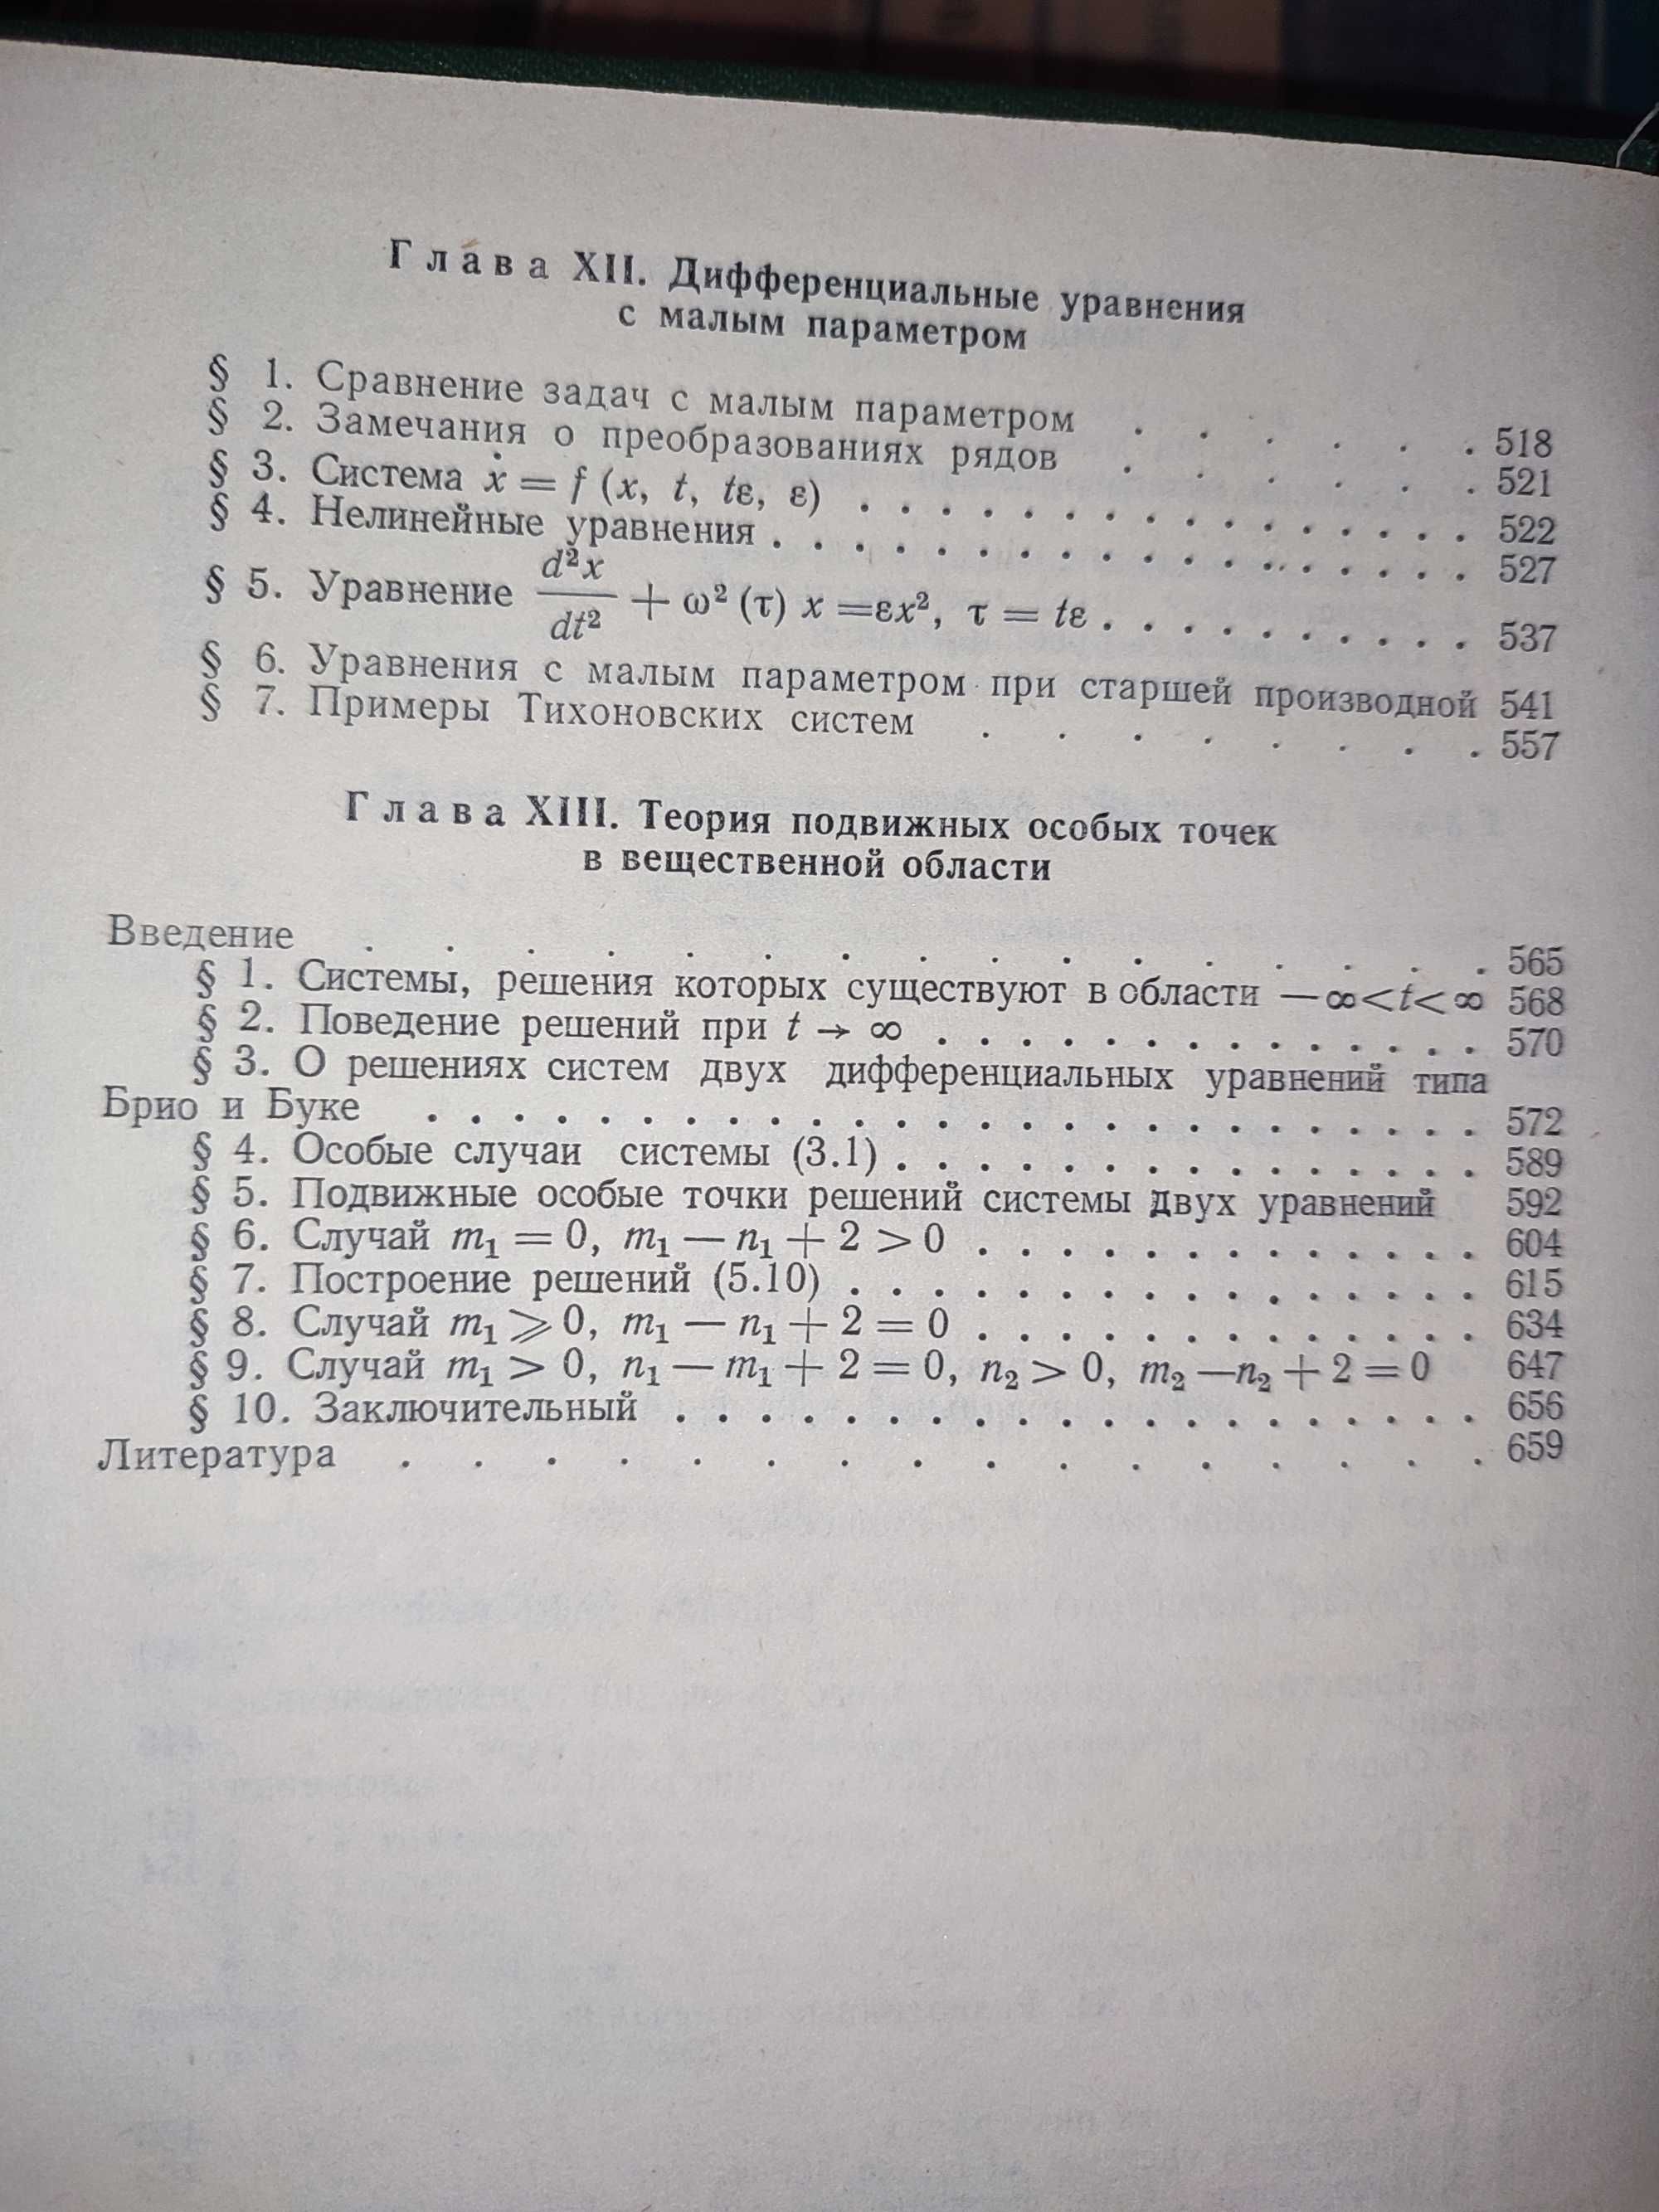 Книга для чтения по общему курсу дифференциальных уравнений Еругин